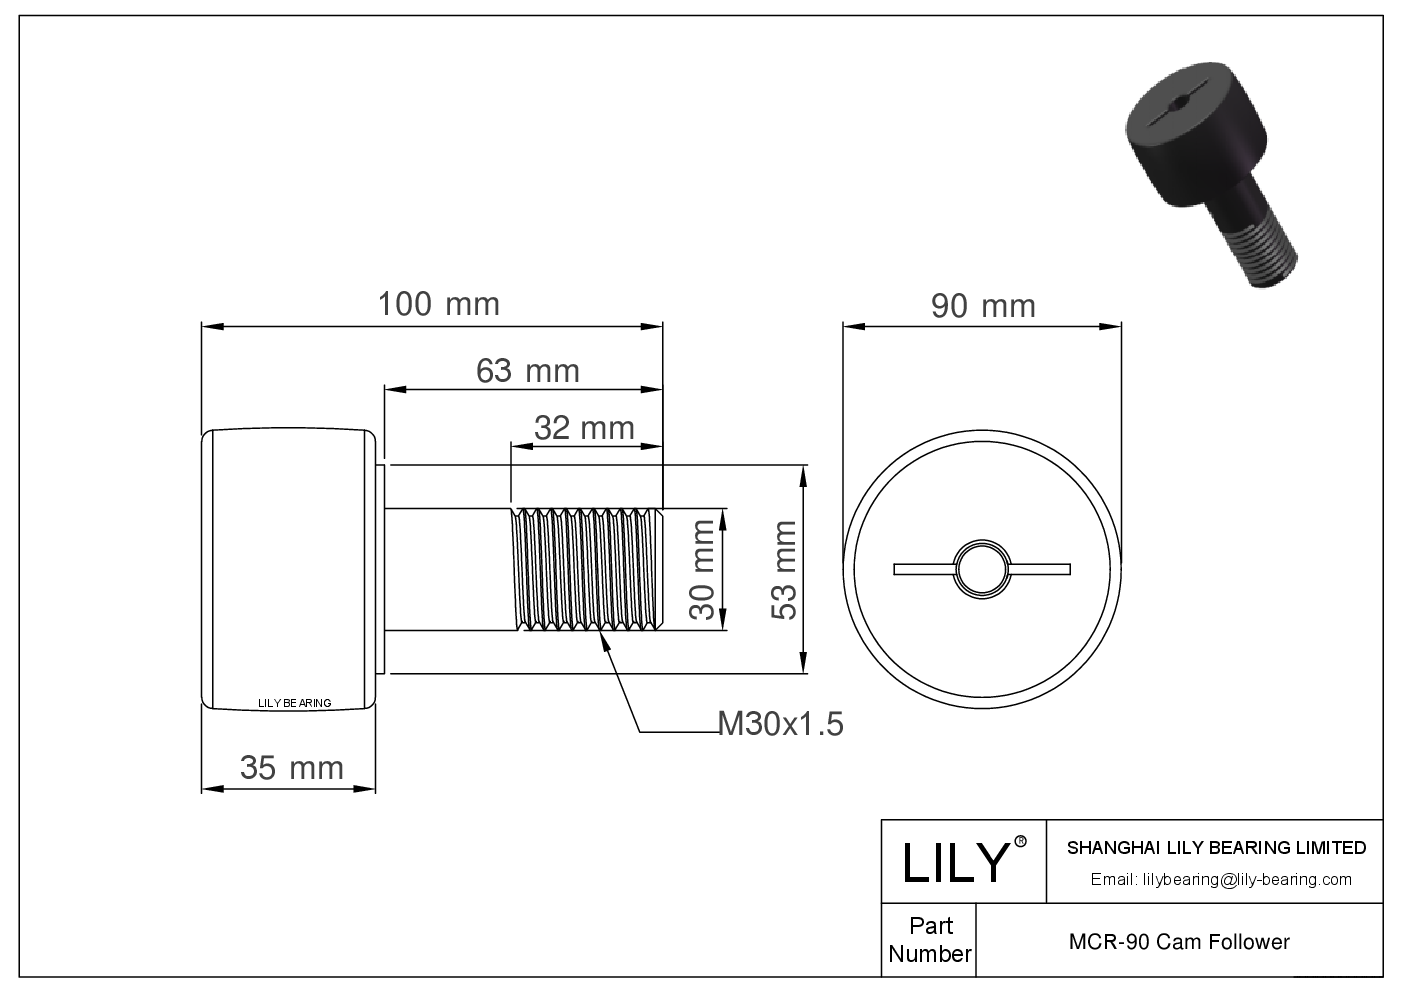 MCR-90 Stud Style Metric Cam Followers CAD图形